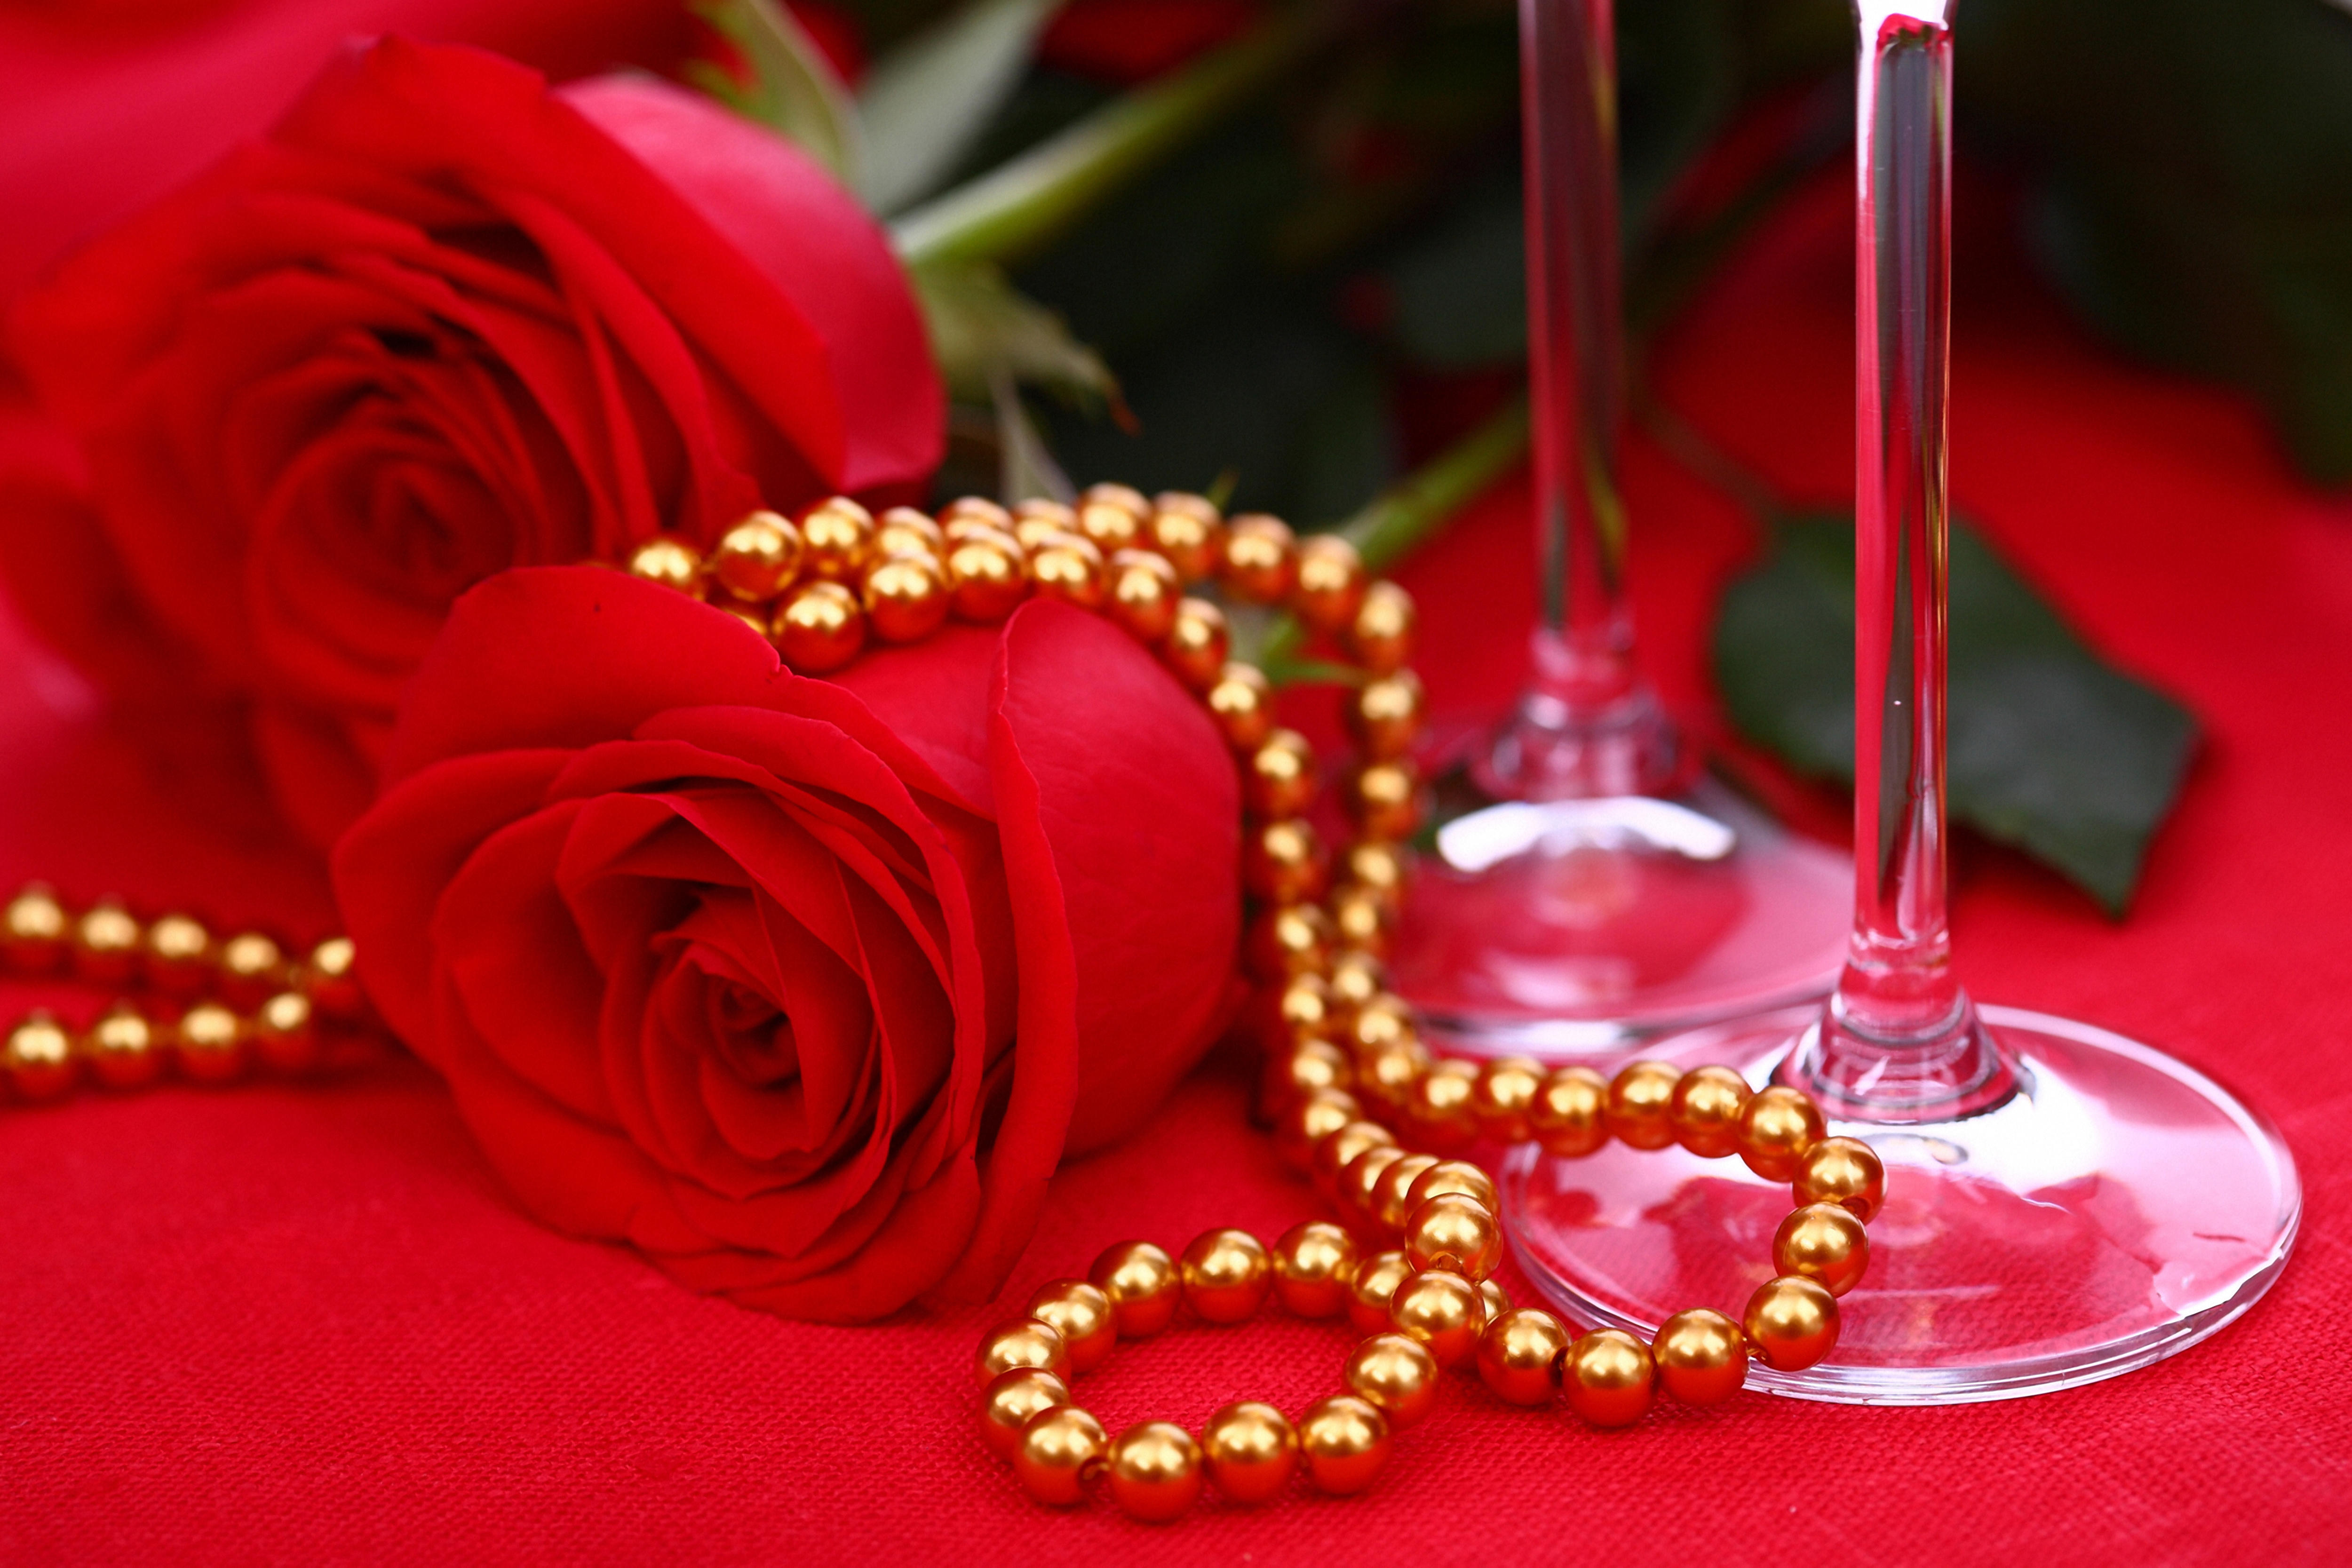 Обои красные розы бутоны цветы на рабочий стол